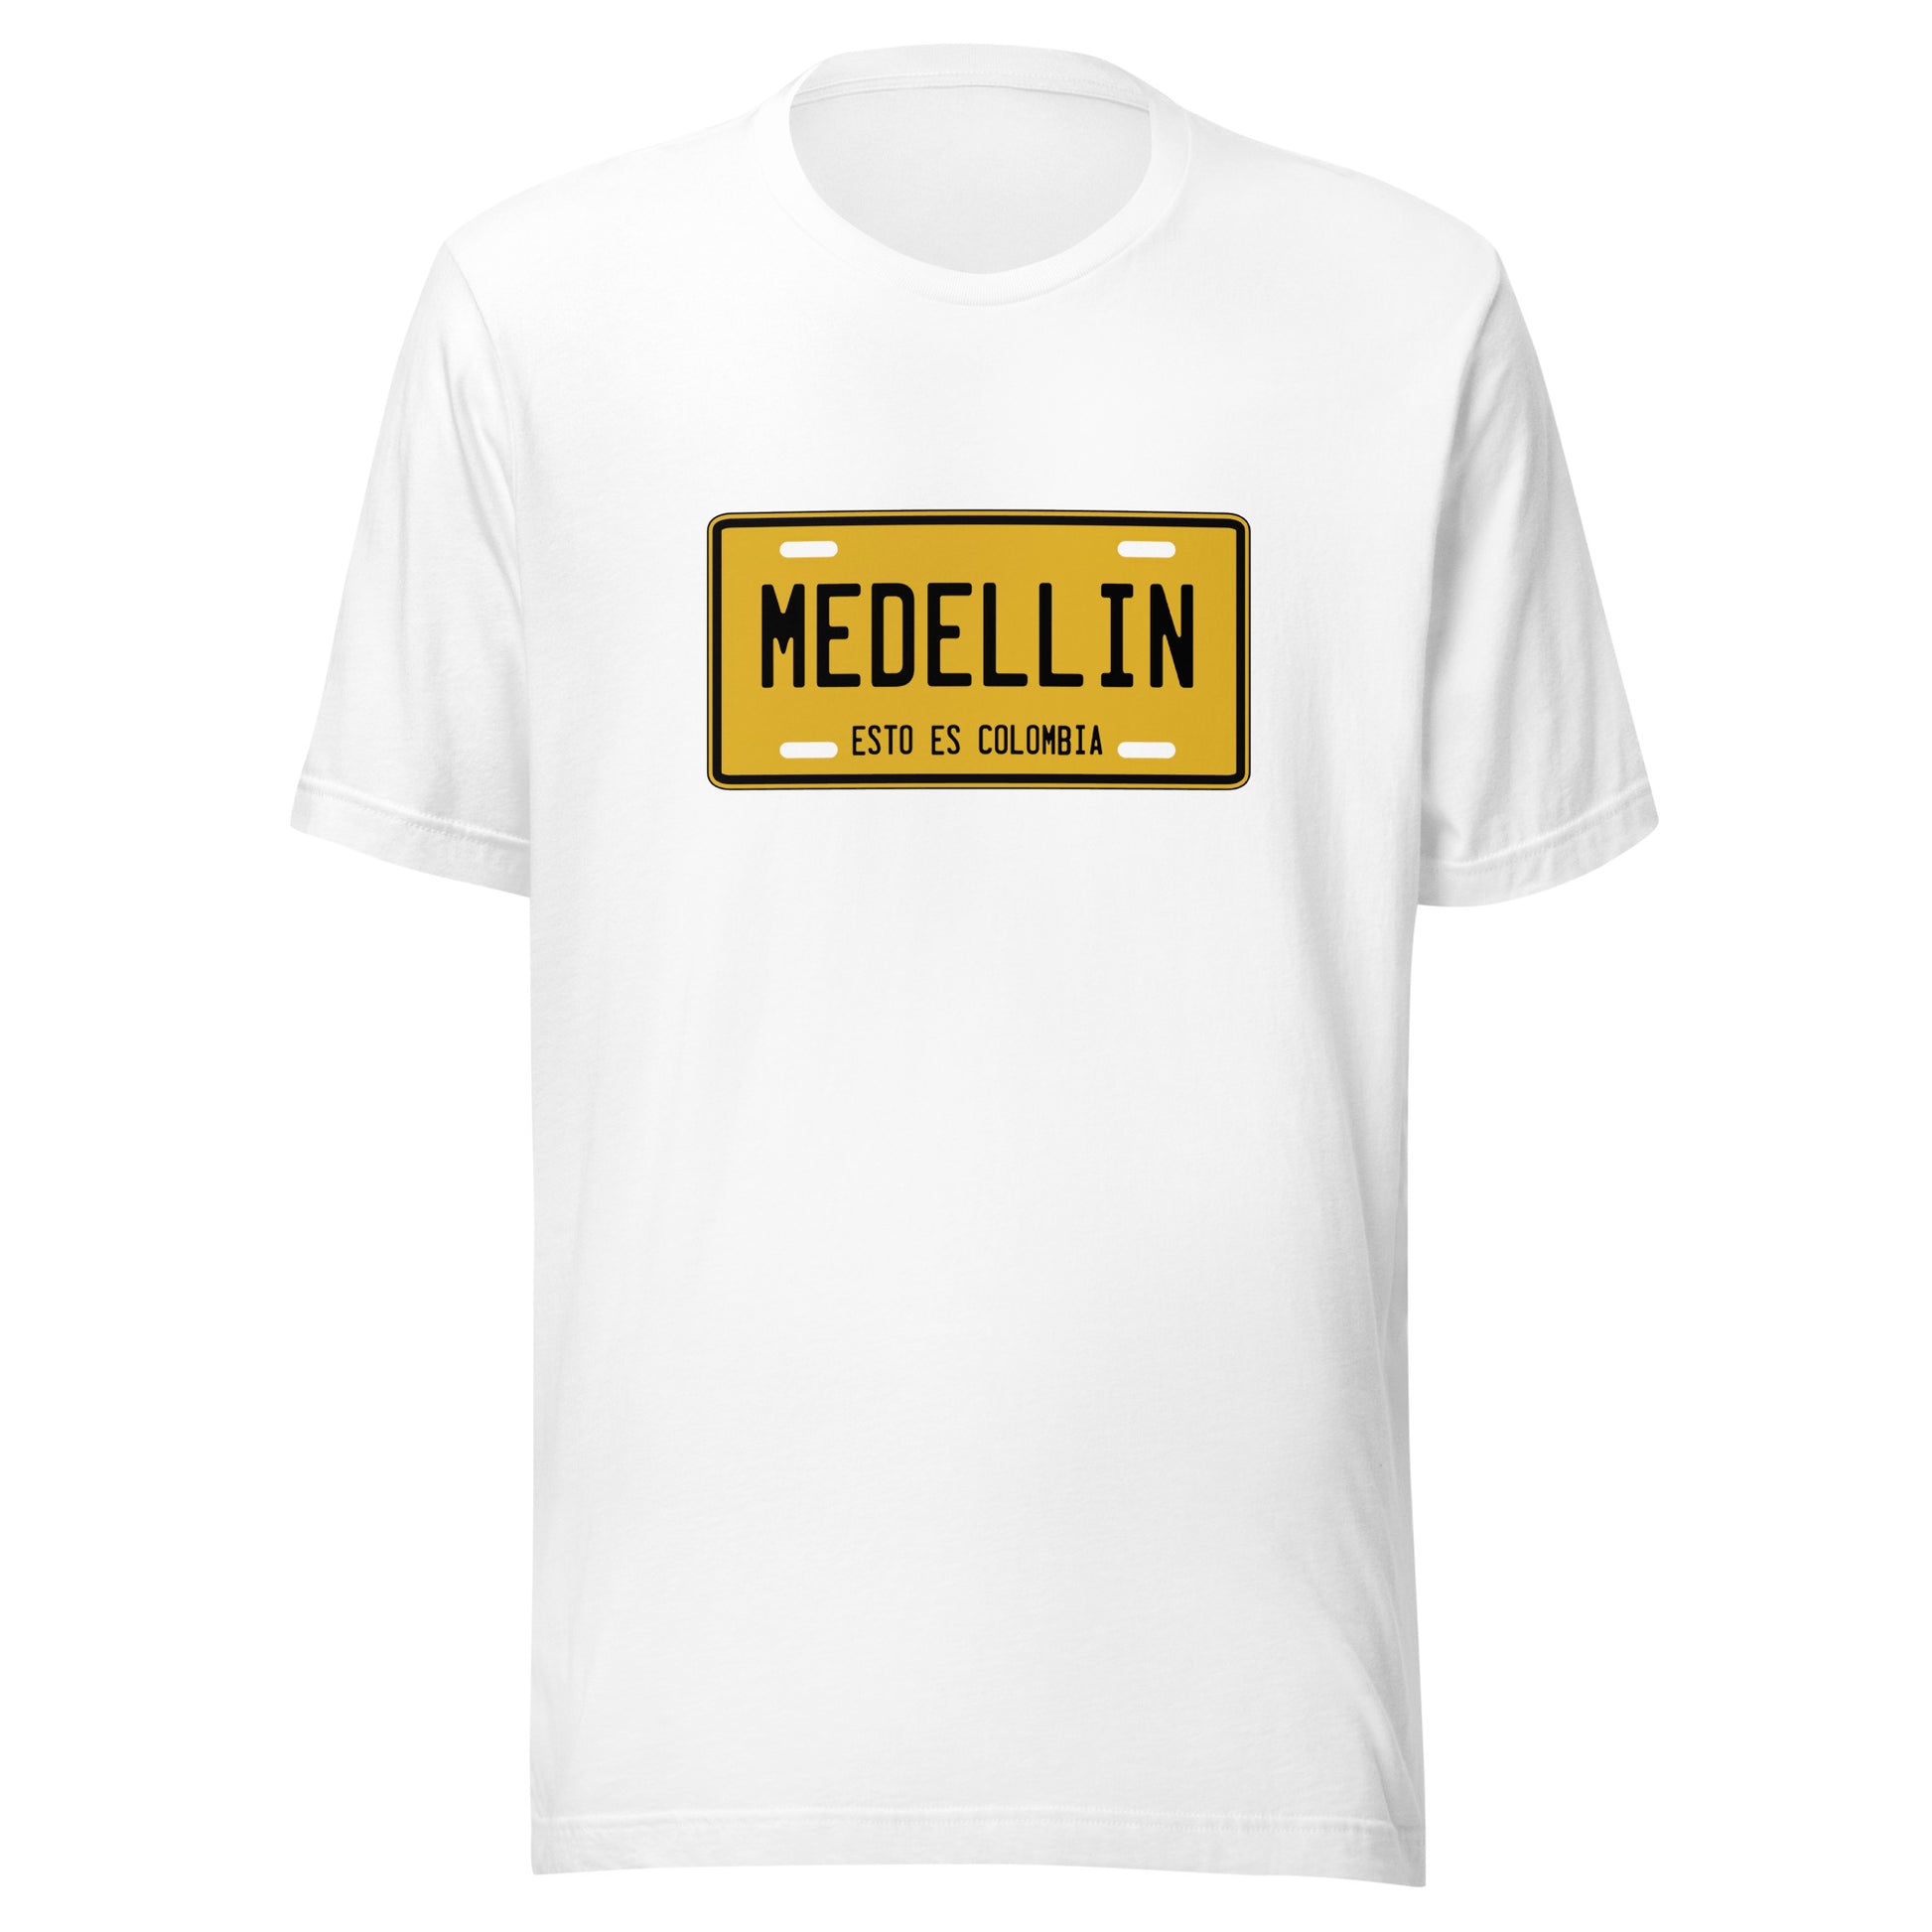 Muestra tu orgullo colombiano con la Camiseta Medellín esto es Colombia. Diseñada con los mejores materiales y un estampado duradero.